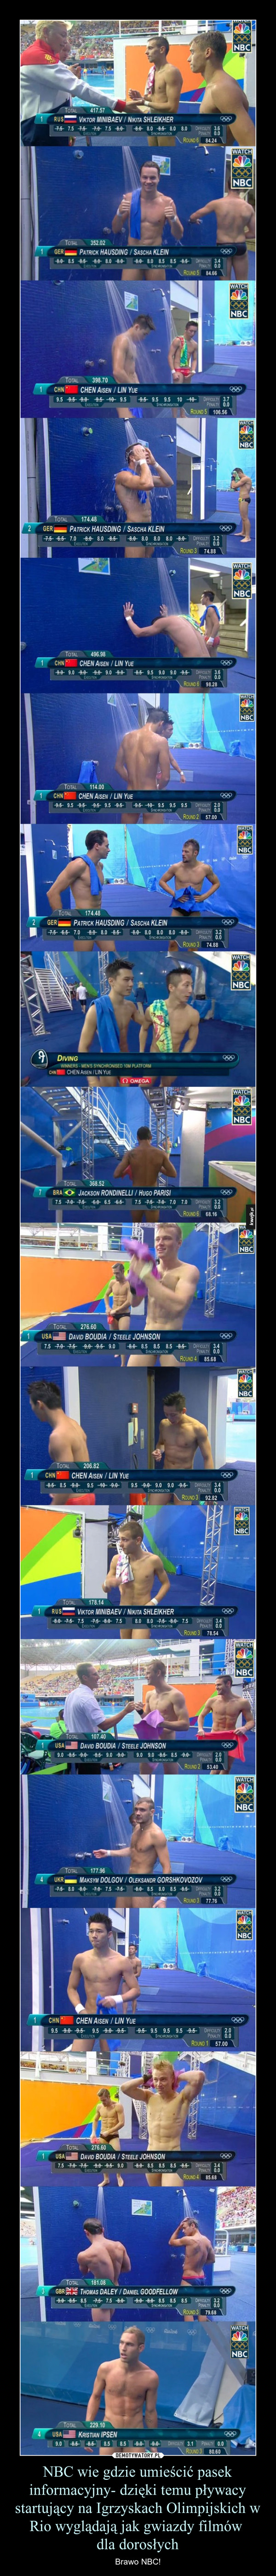 NBC wie gdzie umieścić pasek informacyjny- dzięki temu pływacy startujący na Igrzyskach Olimpijskich w Rio wyglądają jak gwiazdy filmów dla dorosłych – Brawo NBC! 